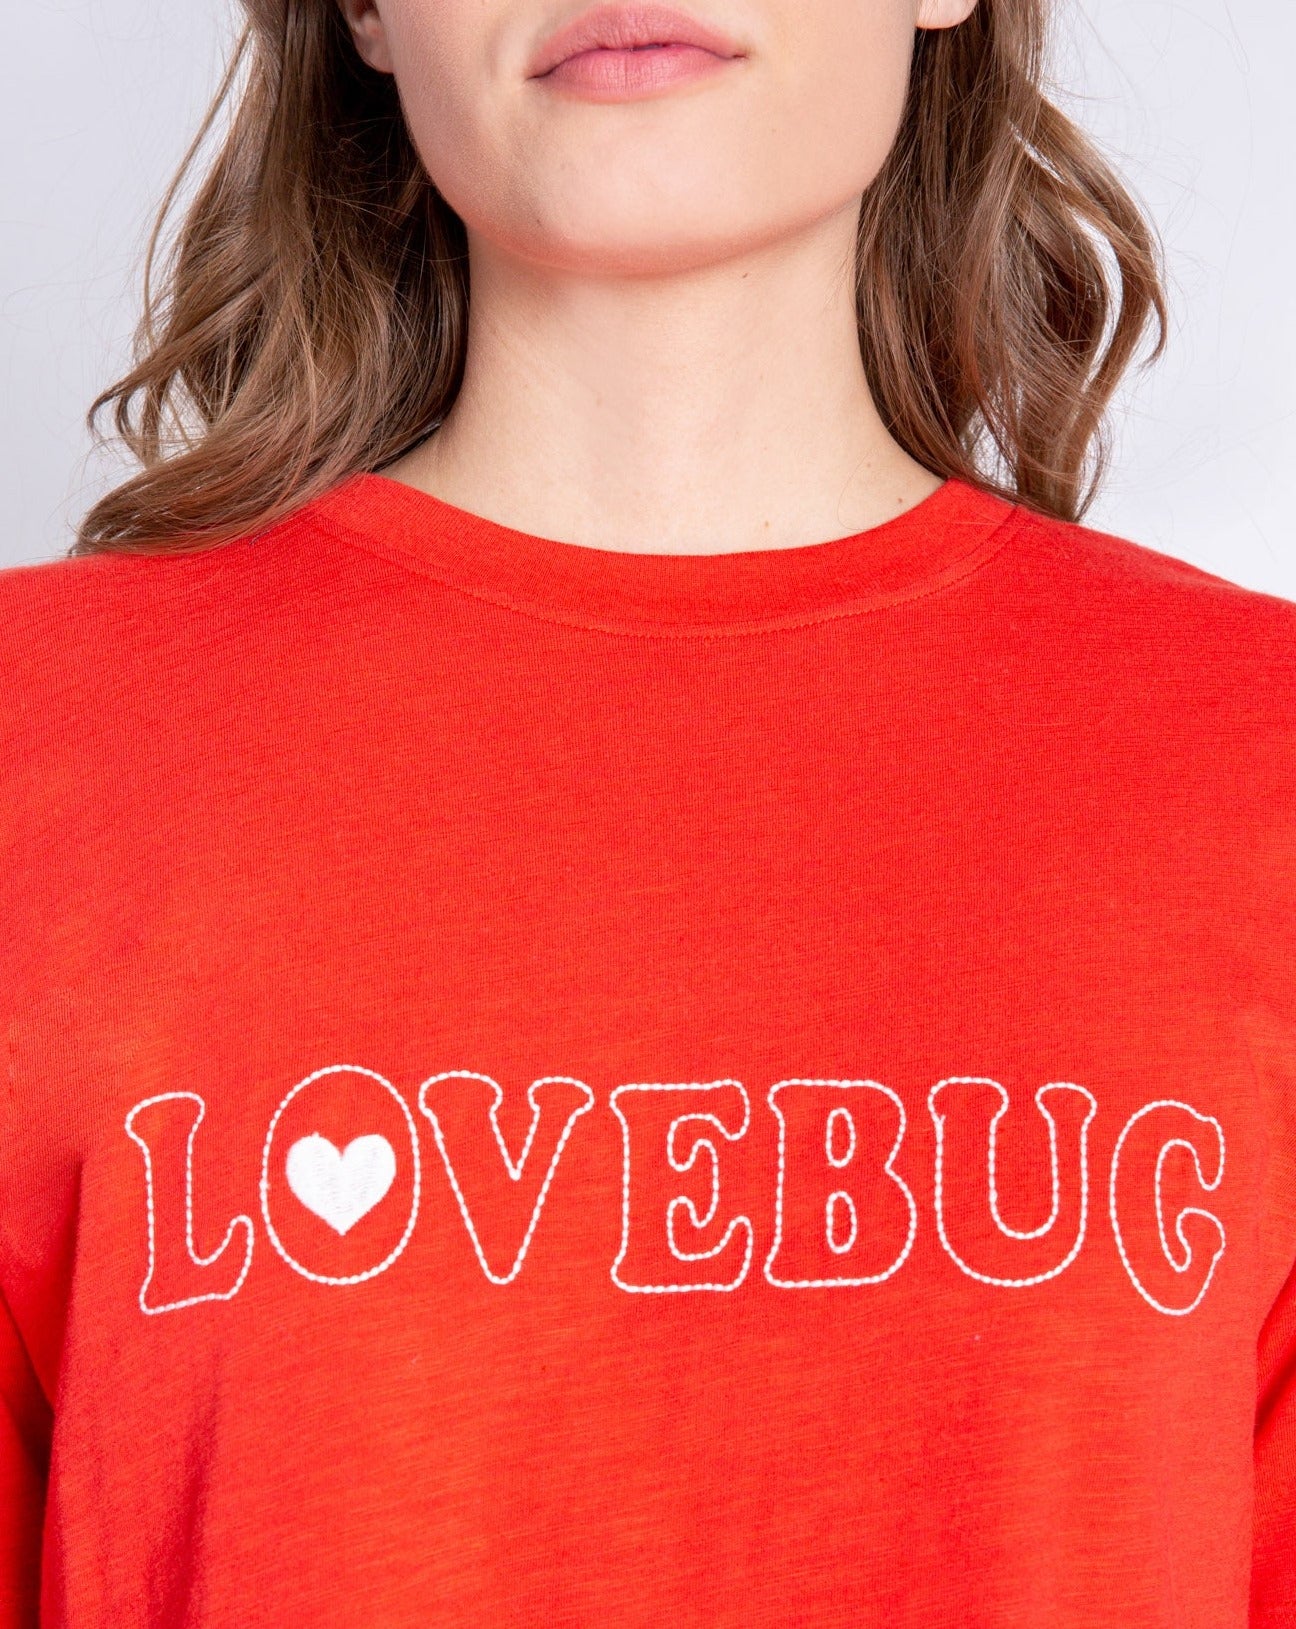 Lovebug Jammie Set: Size L - Beestung Lingerie